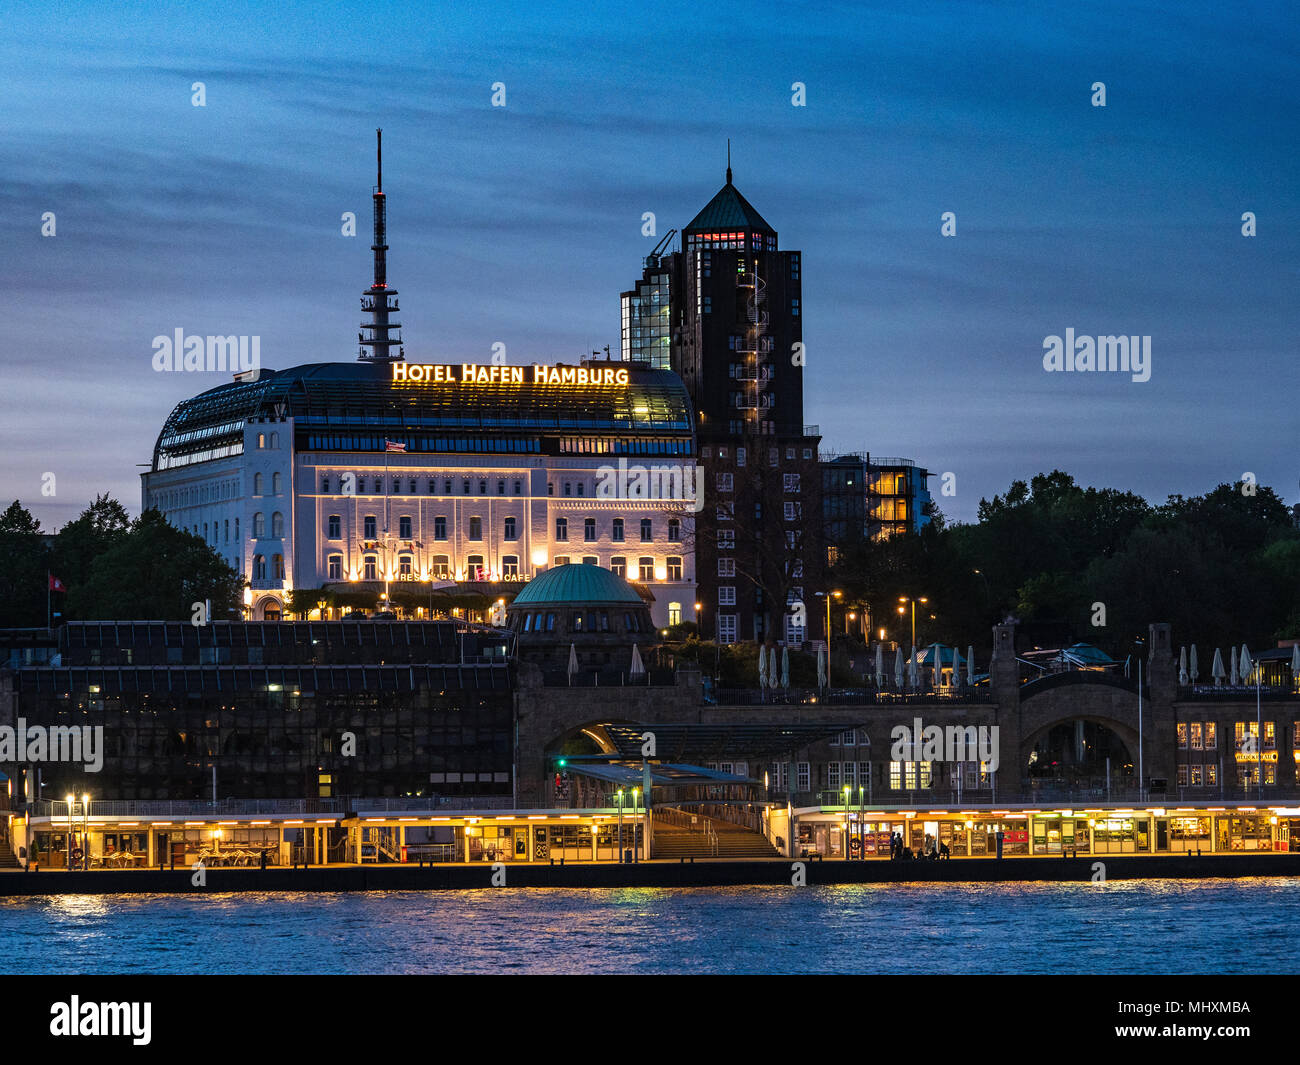 Hotel Hafen Hamburg & muelle Landungsbrücken Hamburgo - un muelle flotante de 700 metros de largo sobre el río Elba, en el centro de Hamburgo Foto de stock